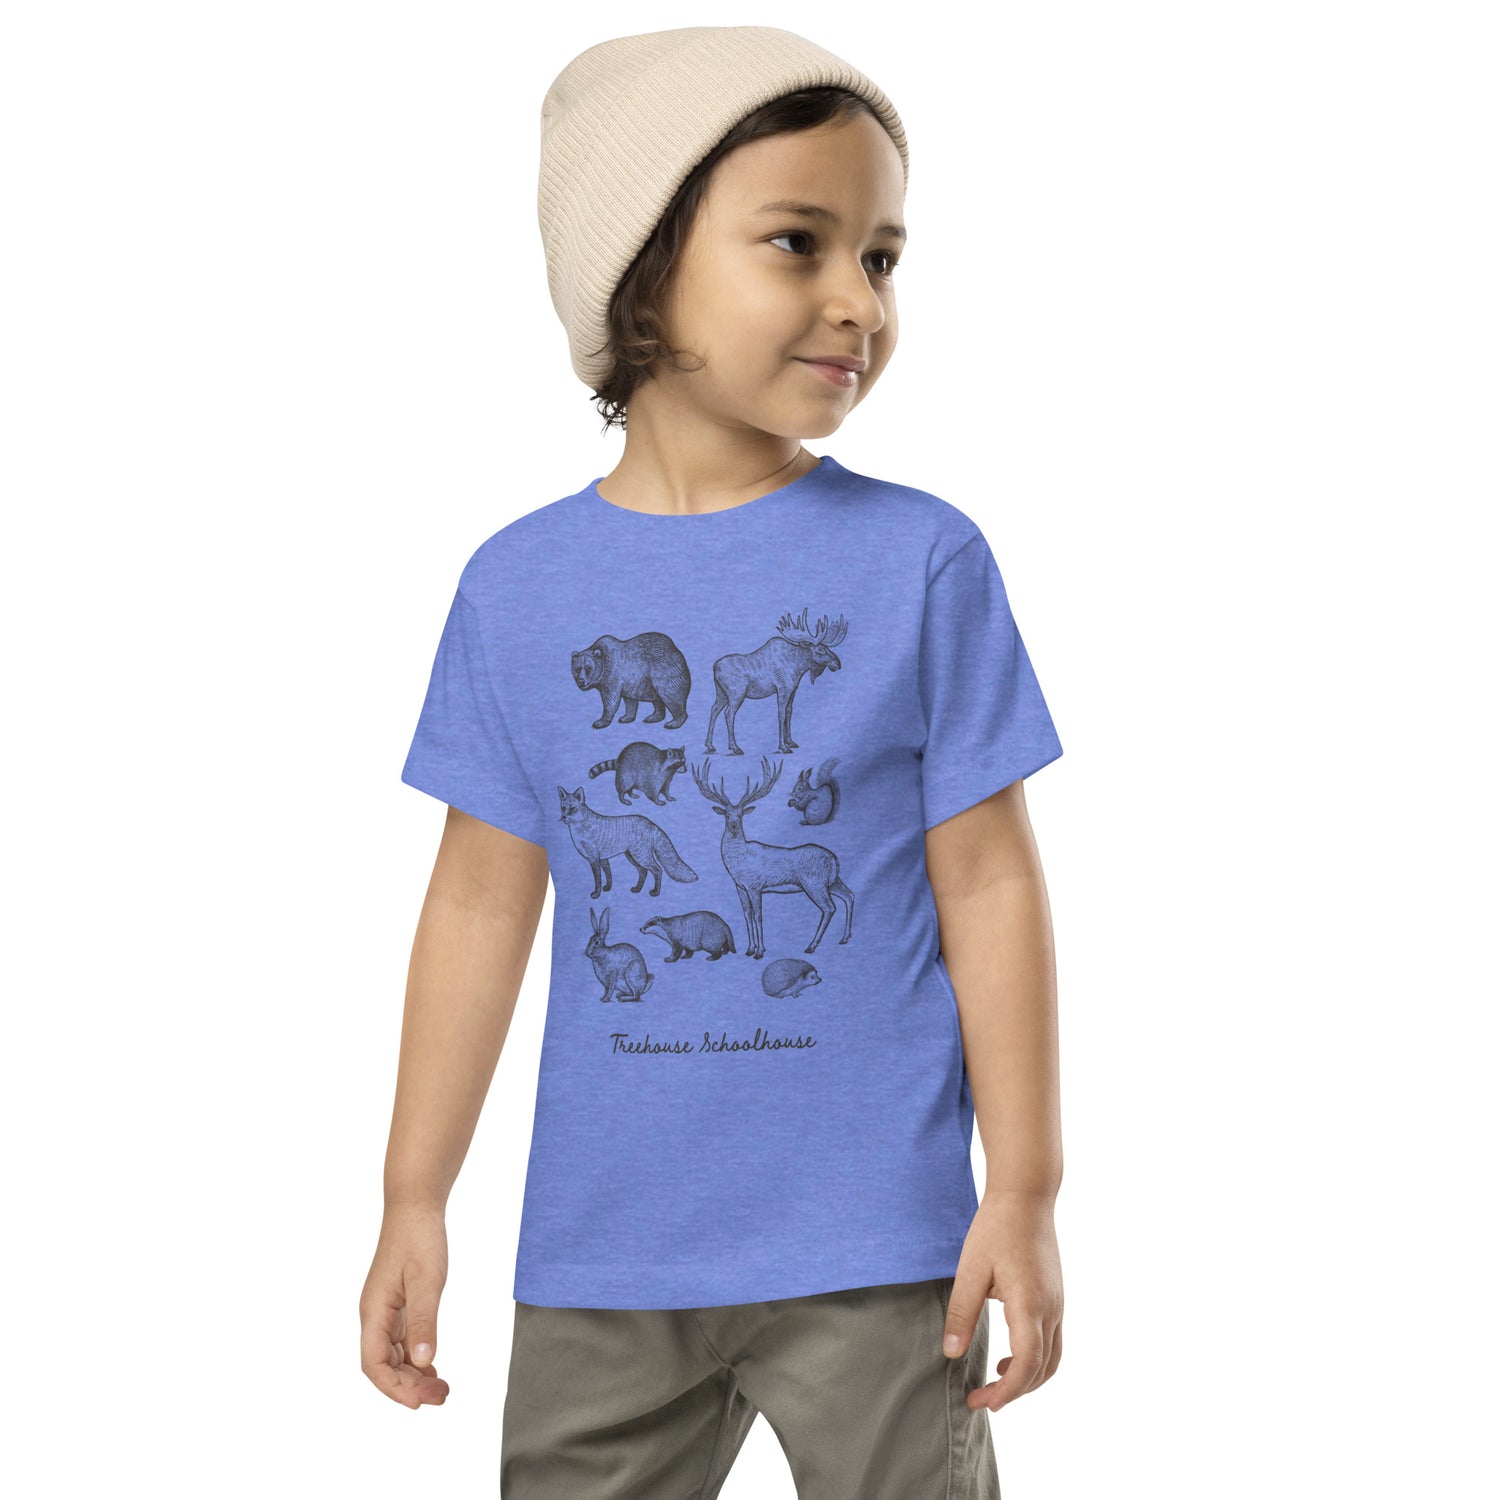 Toddler Woodland Creatures T-Shirt